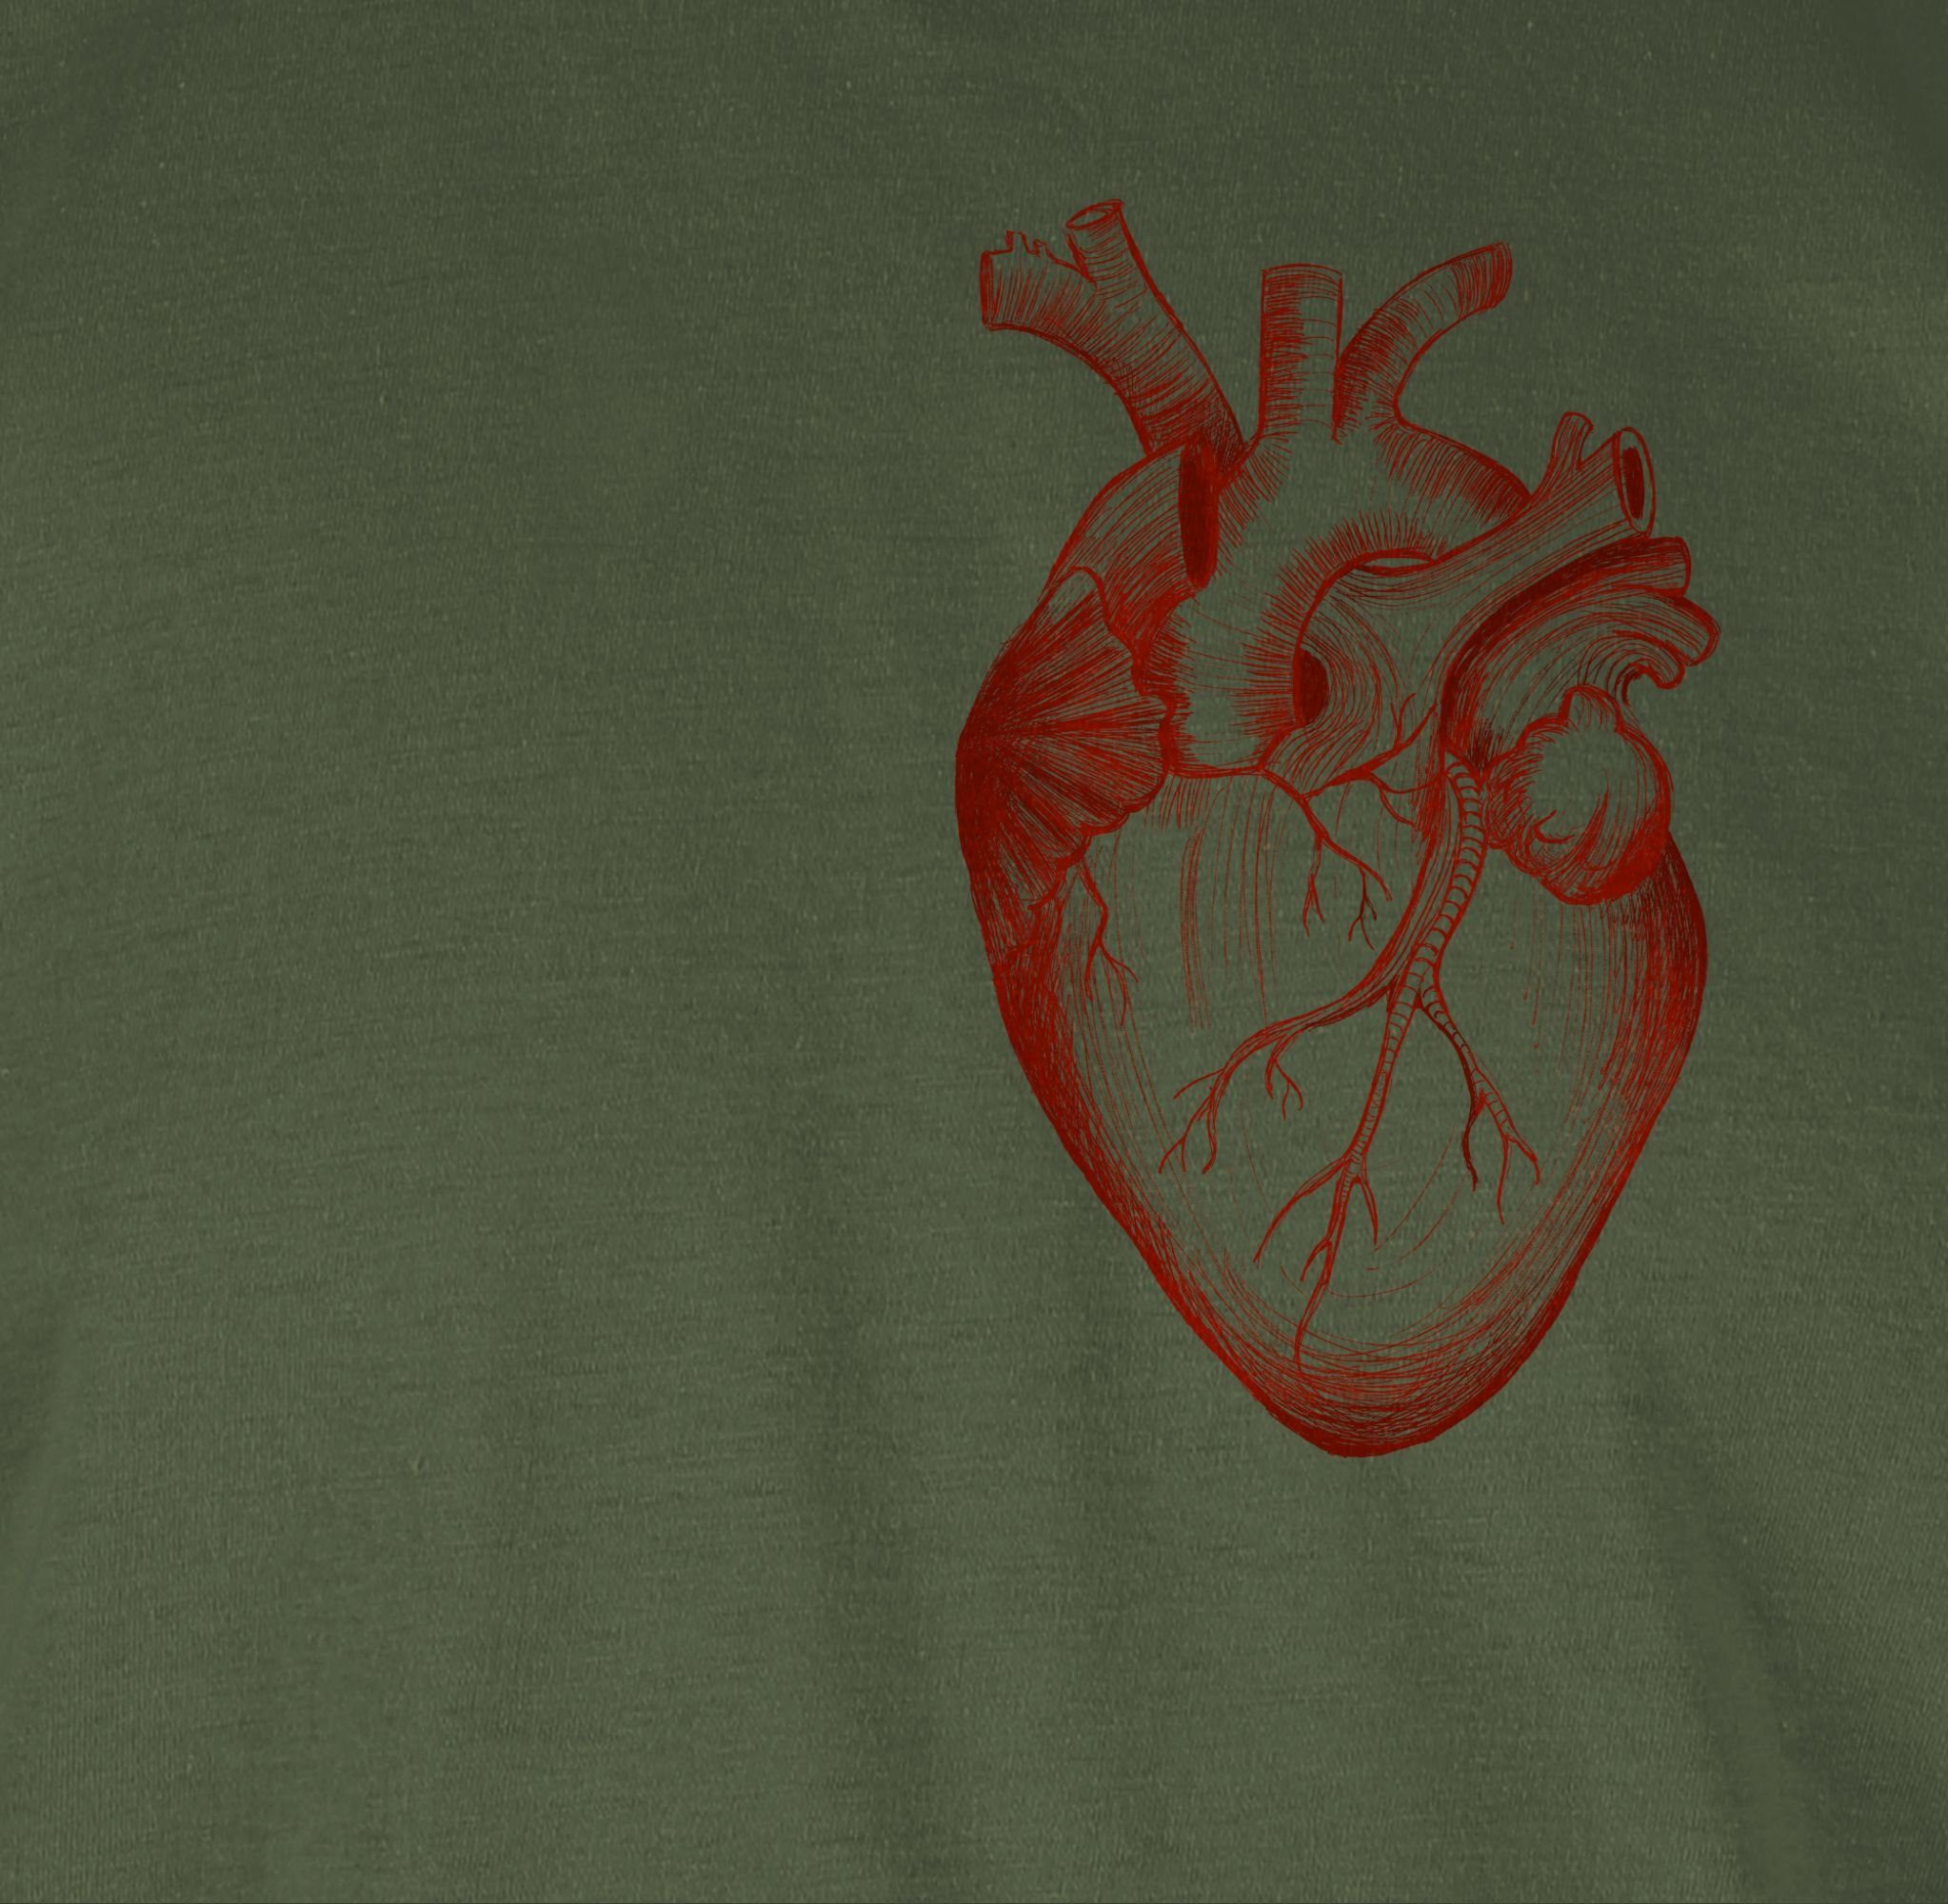 Army Grün Herz Anatomie Shirtracer T-Shirt Geschenke Nerd 03